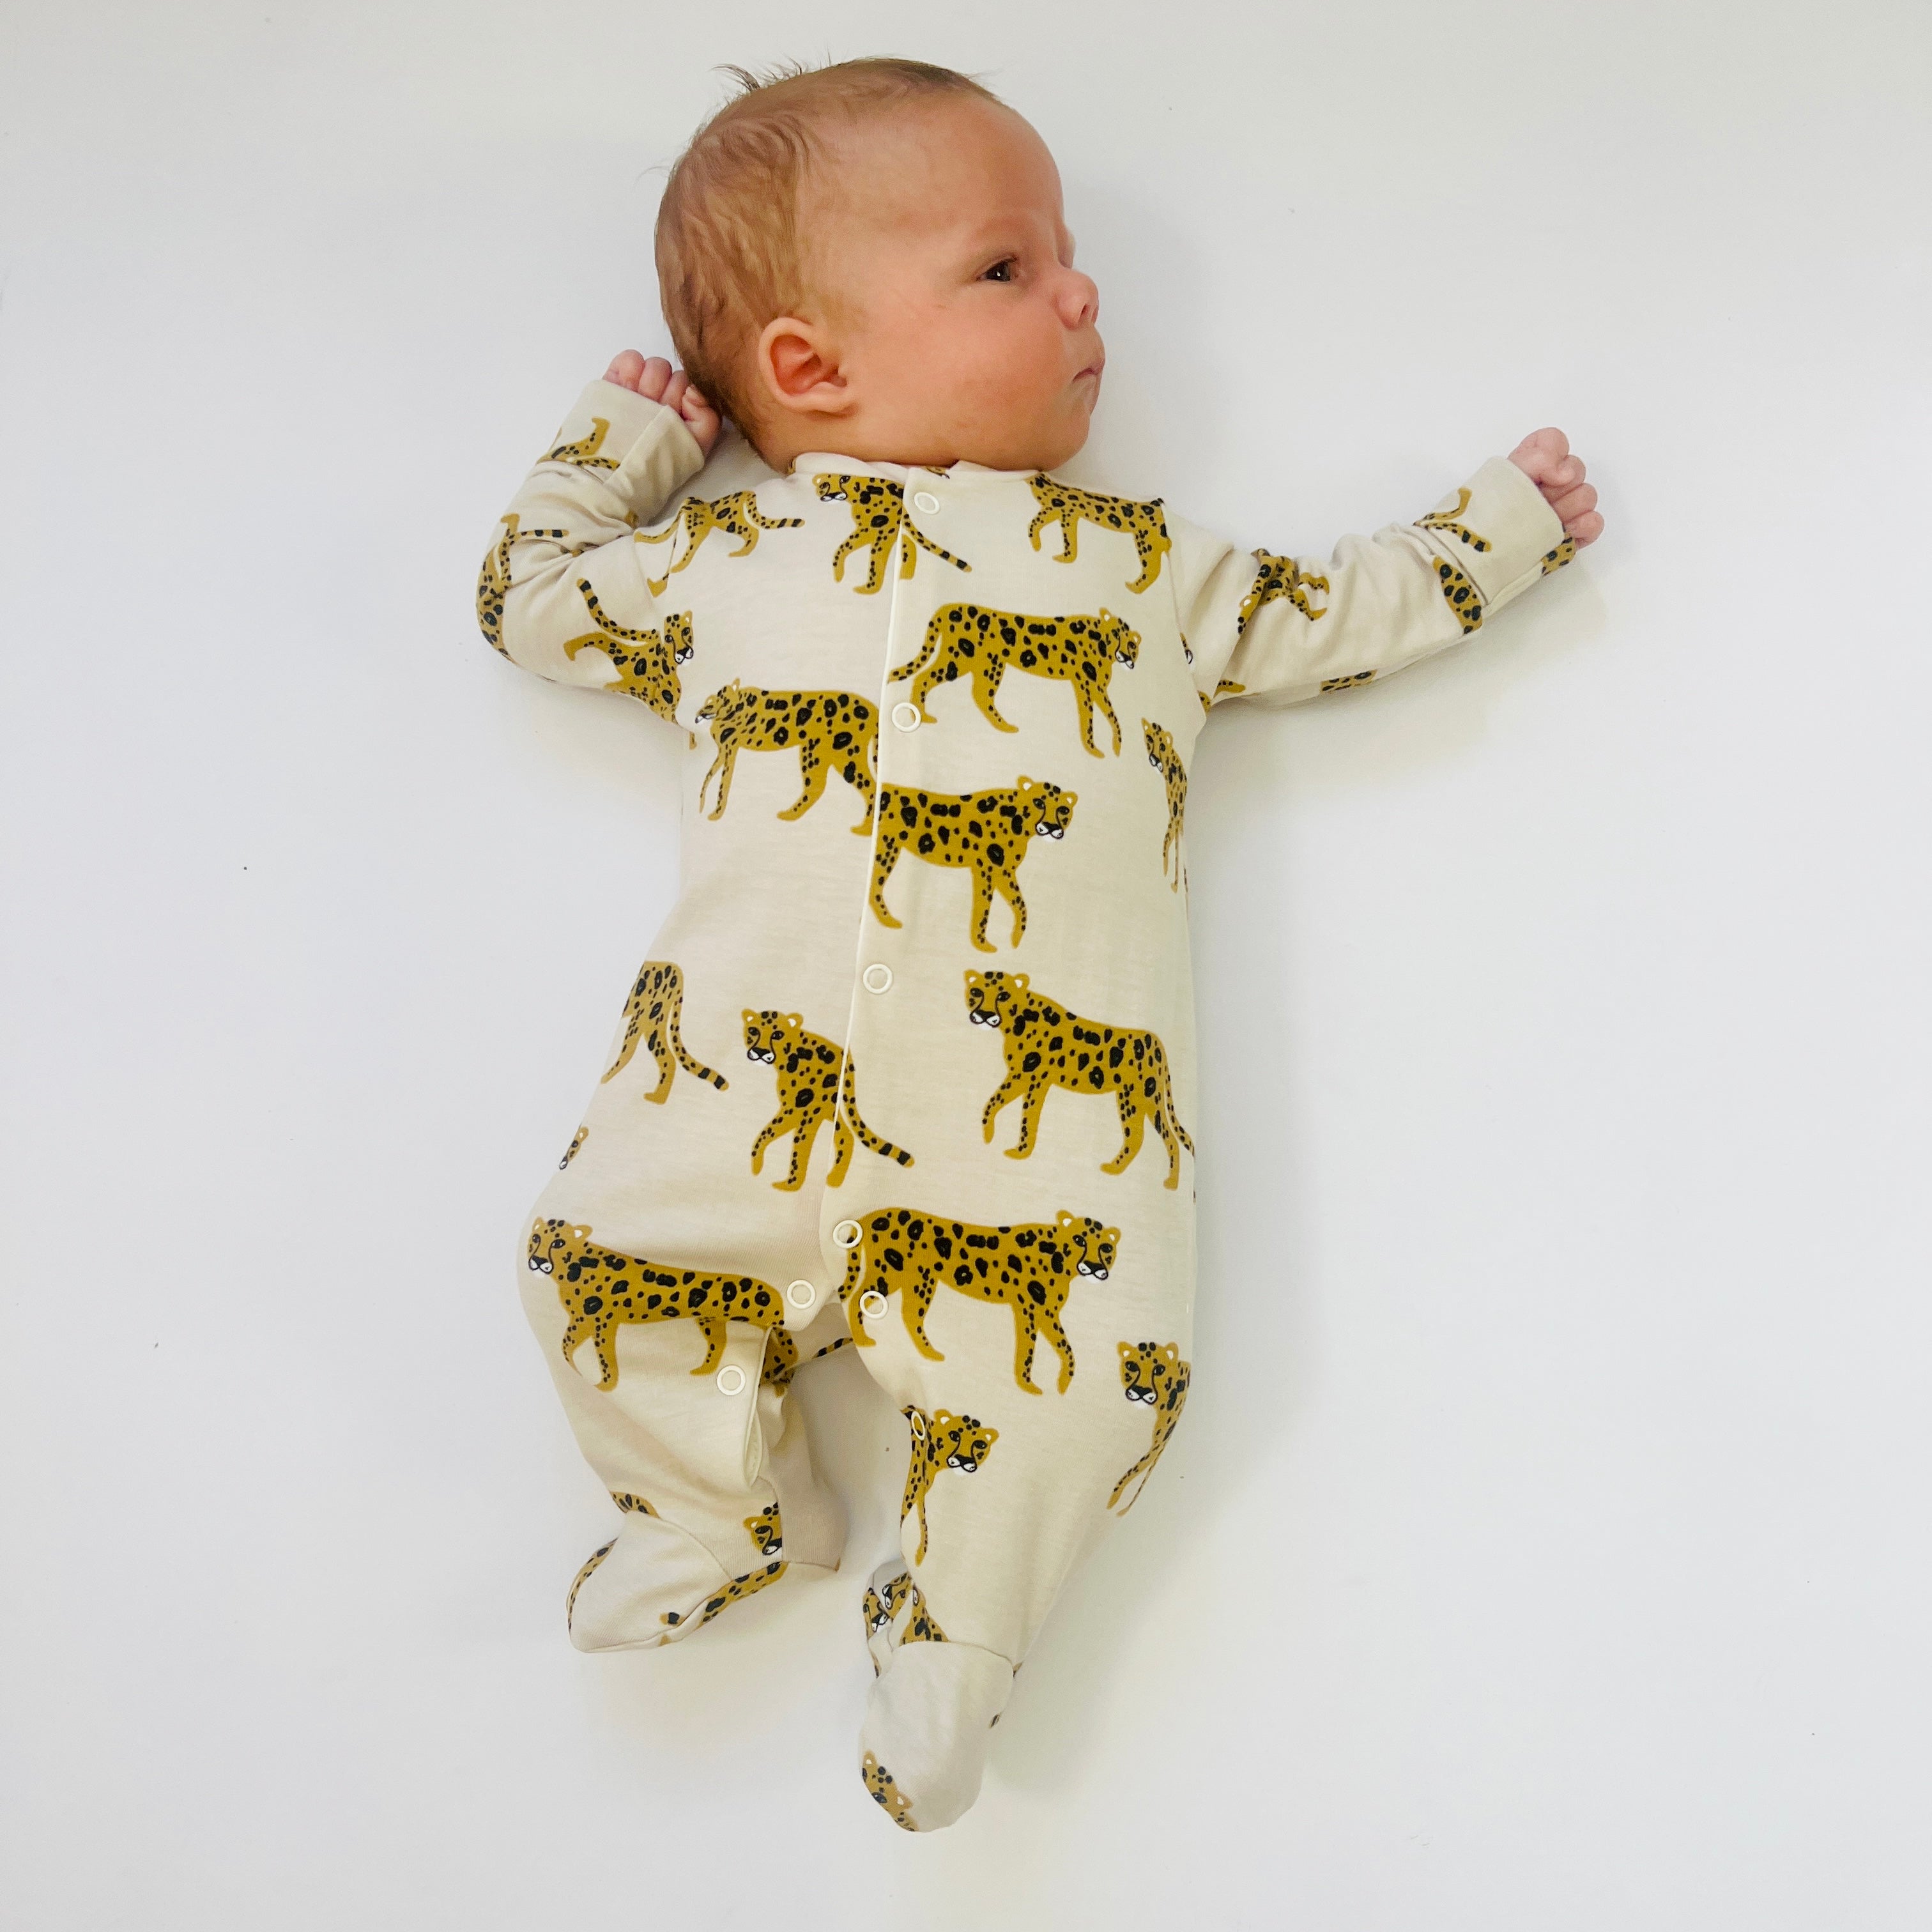 Eddie & Bee organic cotton Baby sleepsuit  in Oat " Cheetah " print.